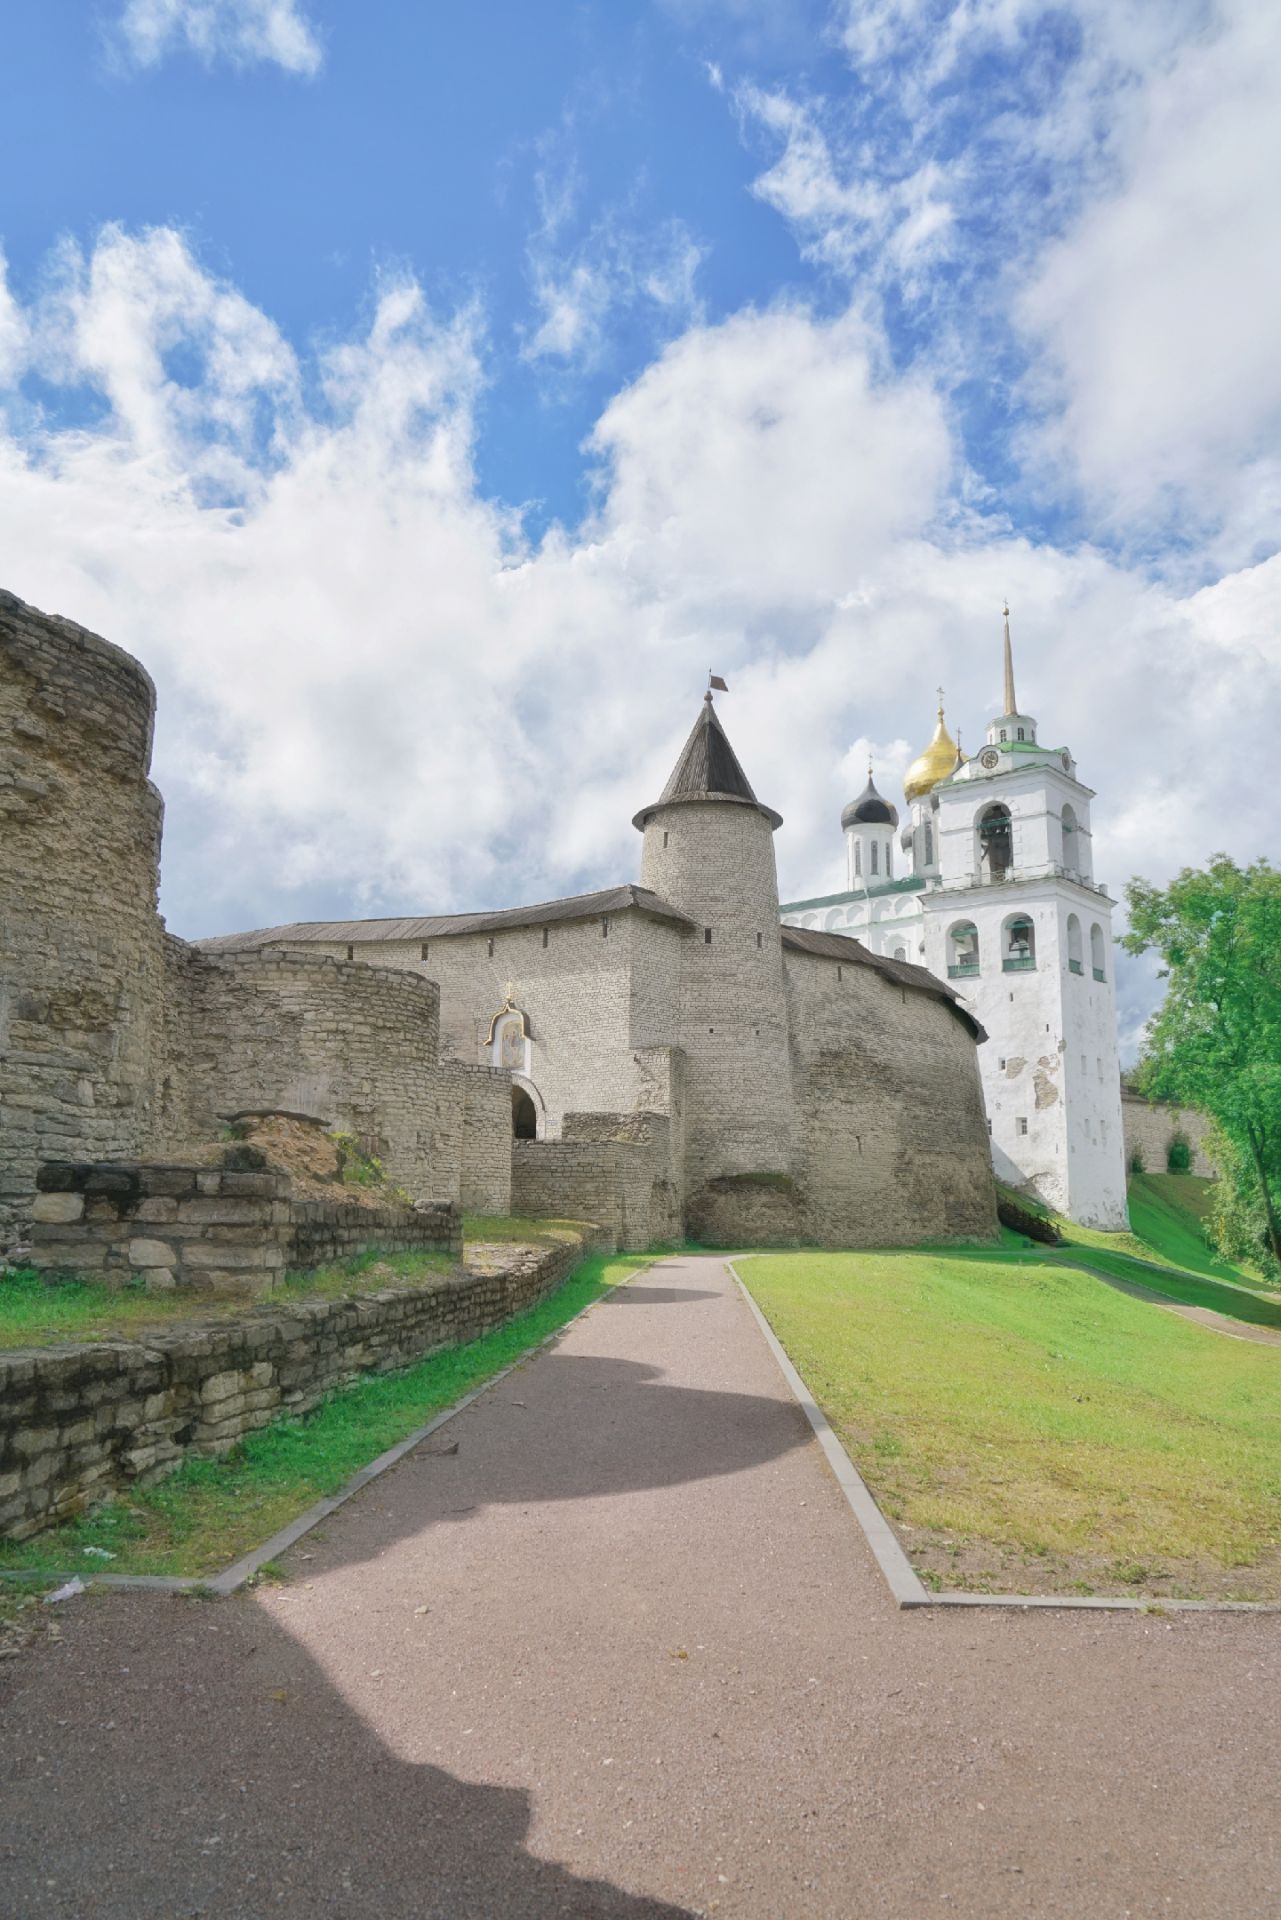 俄罗斯古老边境要塞 载入世界遗产 却游客稀少  普斯科夫在俄罗斯历史地位不输大诺夫哥罗德，它曾经属于